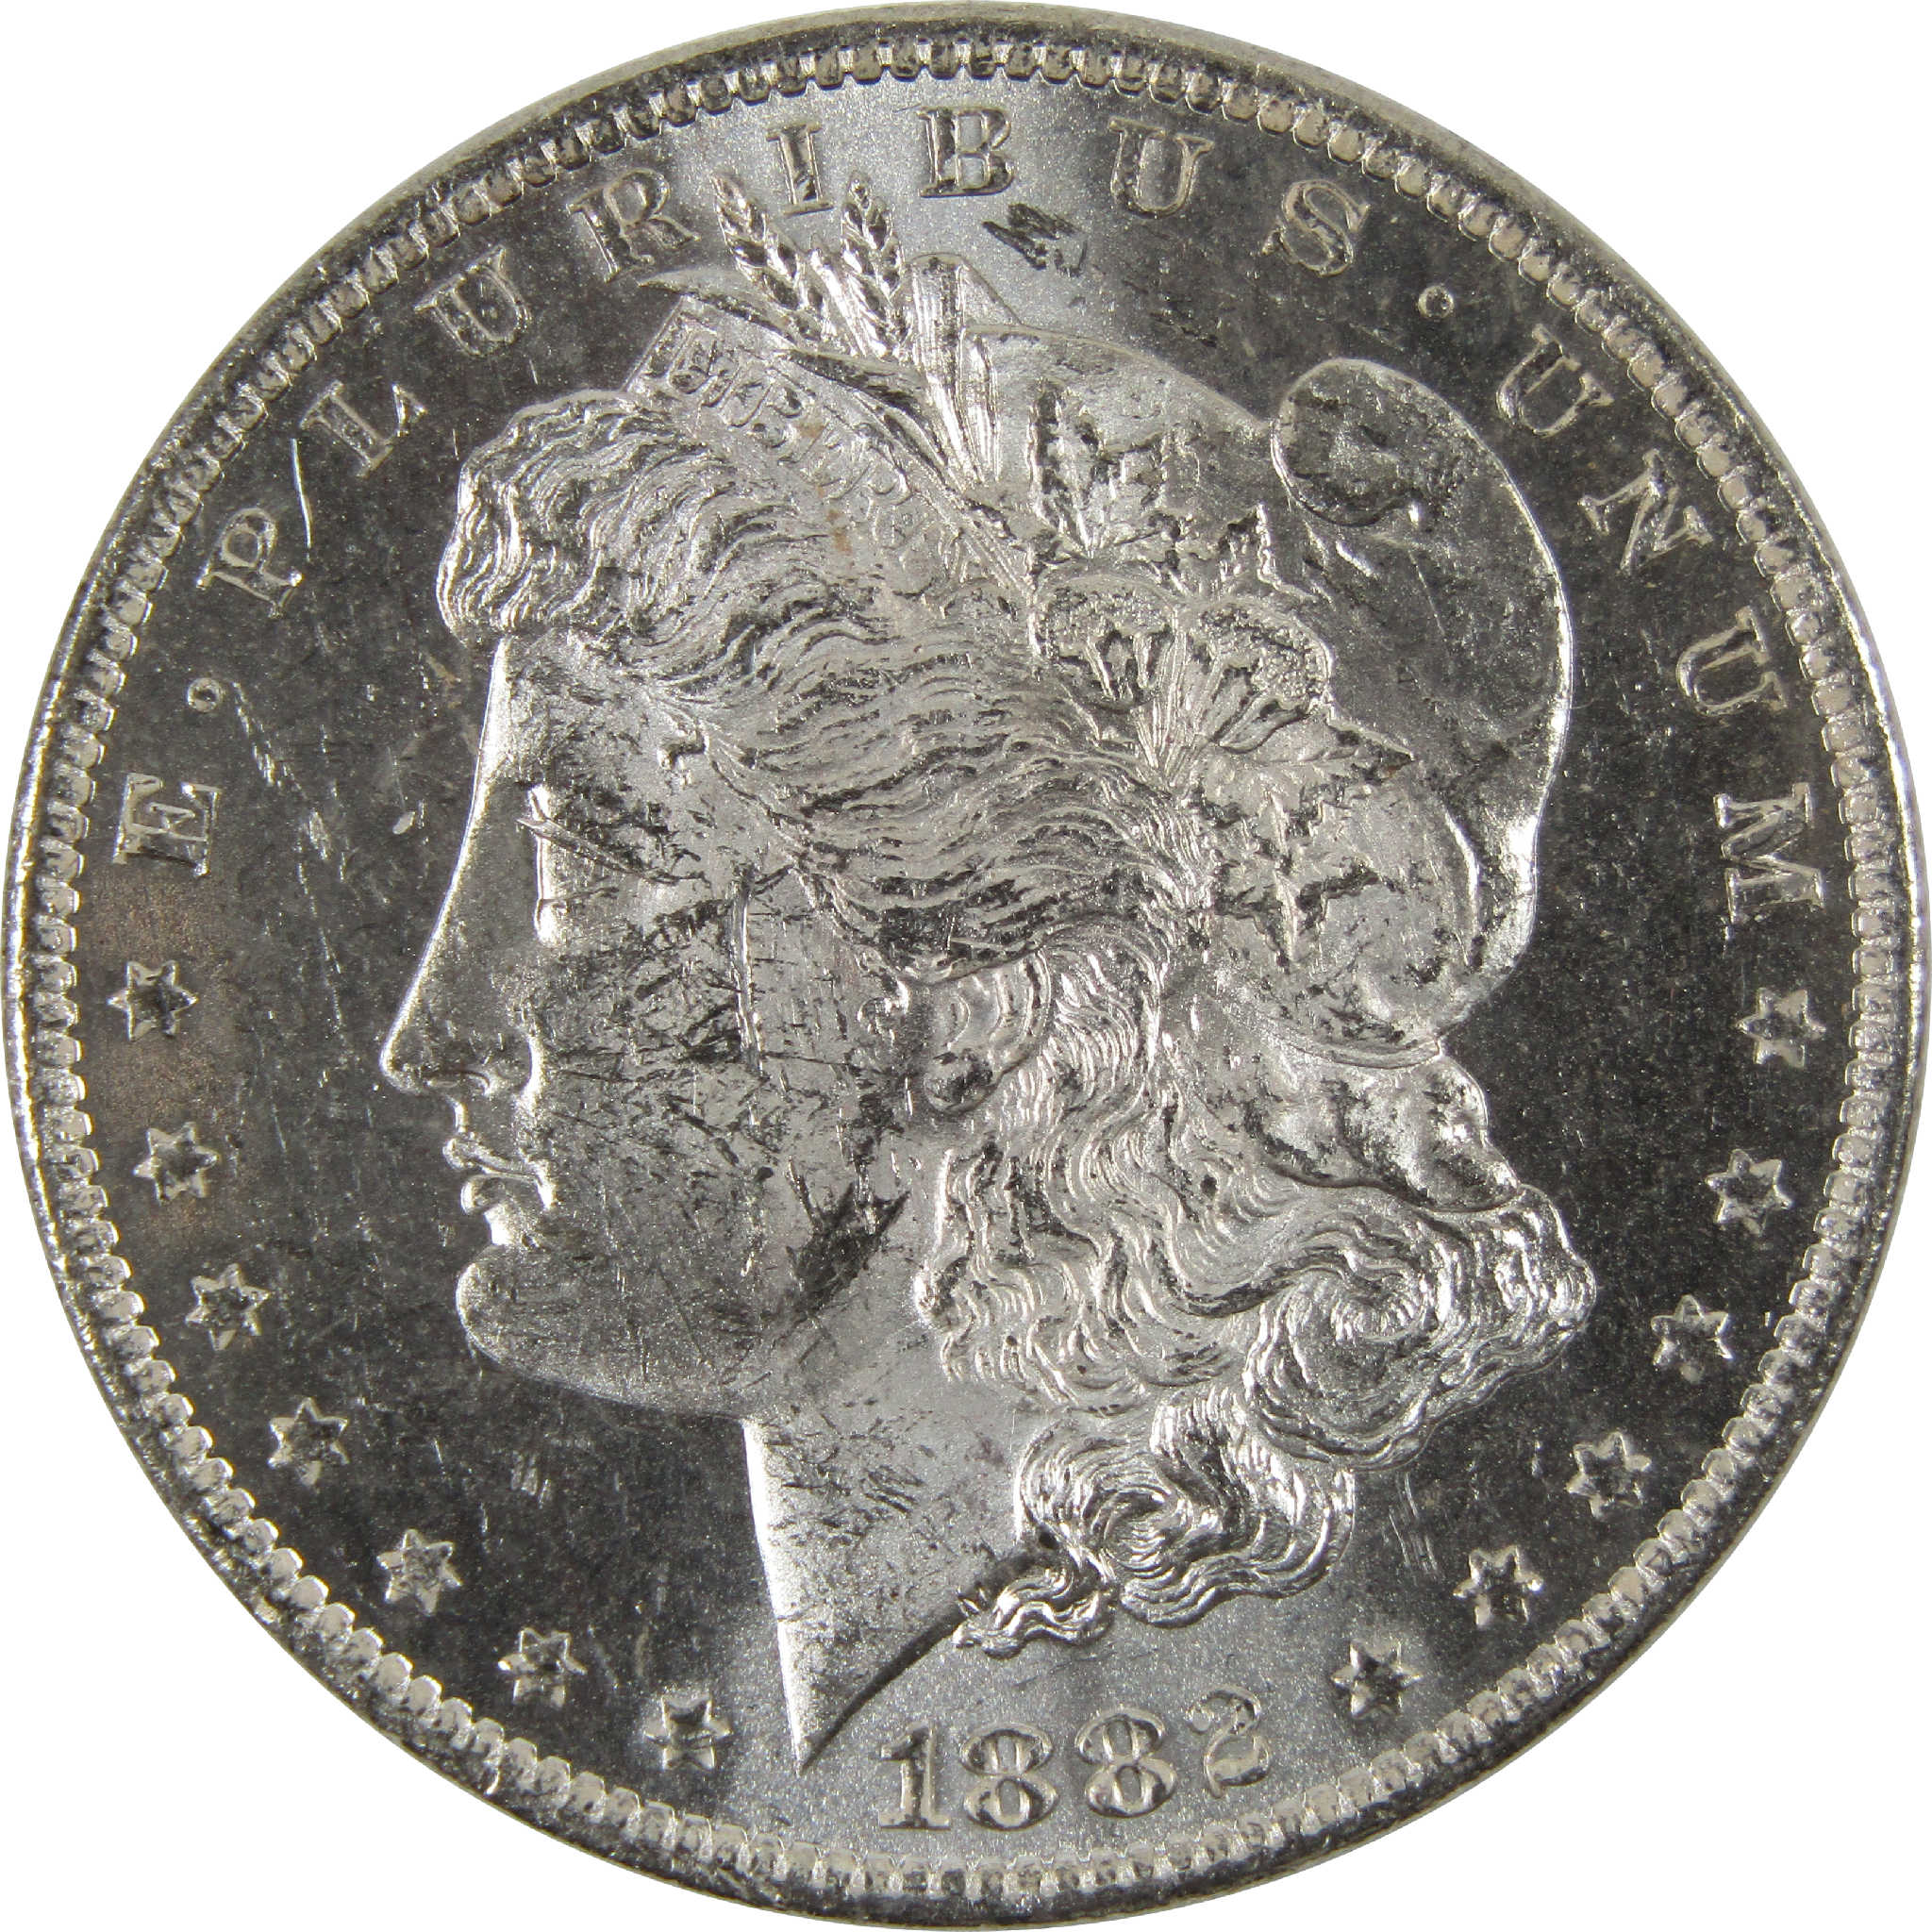 1882 O Morgan Dollar BU Uncirculated 90% Silver $1 Coin SKU:I8917 - Morgan coin - Morgan silver dollar - Morgan silver dollar for sale - Profile Coins &amp; Collectibles